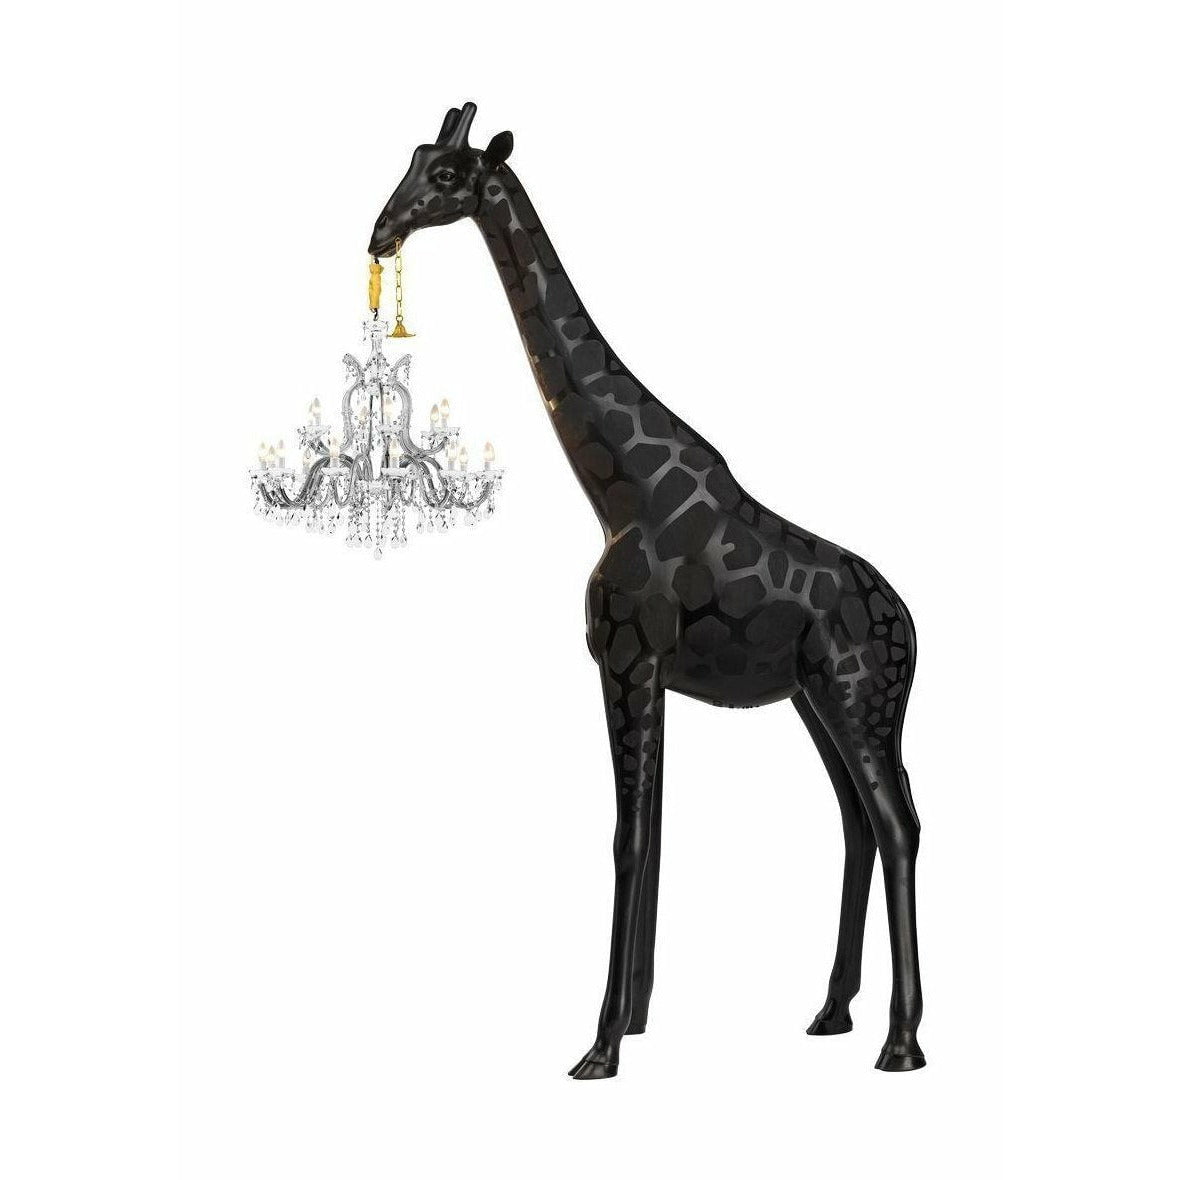 QEEOOO Girafe in Love intérieur lampadaire h 4m, noir